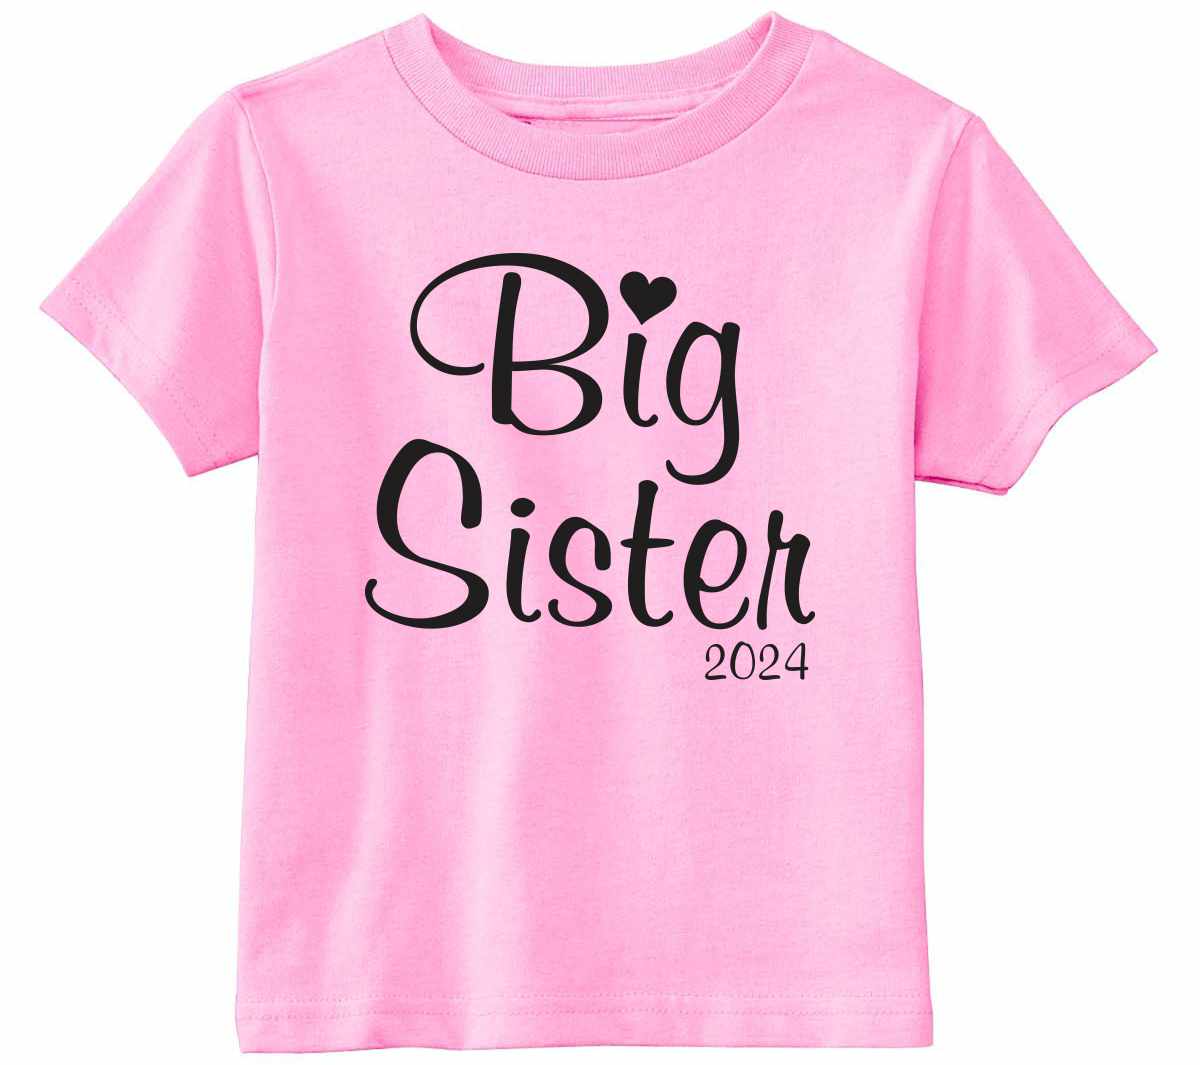 Big Sister 2024 on Infant-Toddler T-Shirt